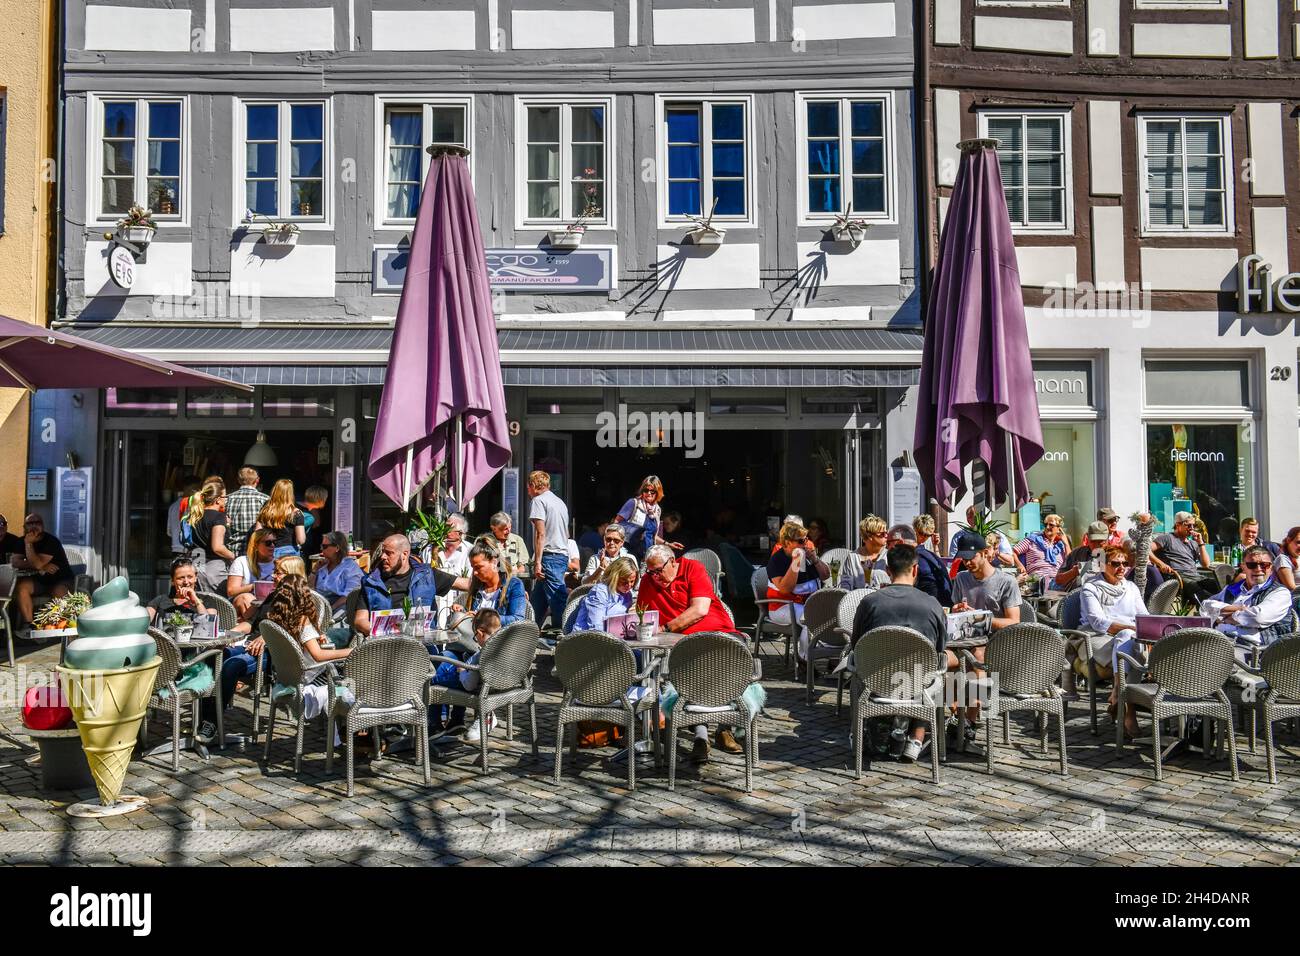 Straßencafé, Bäckerstraße, Altstadt, Hameln, Niedersachsen, Deutschland Banque D'Images